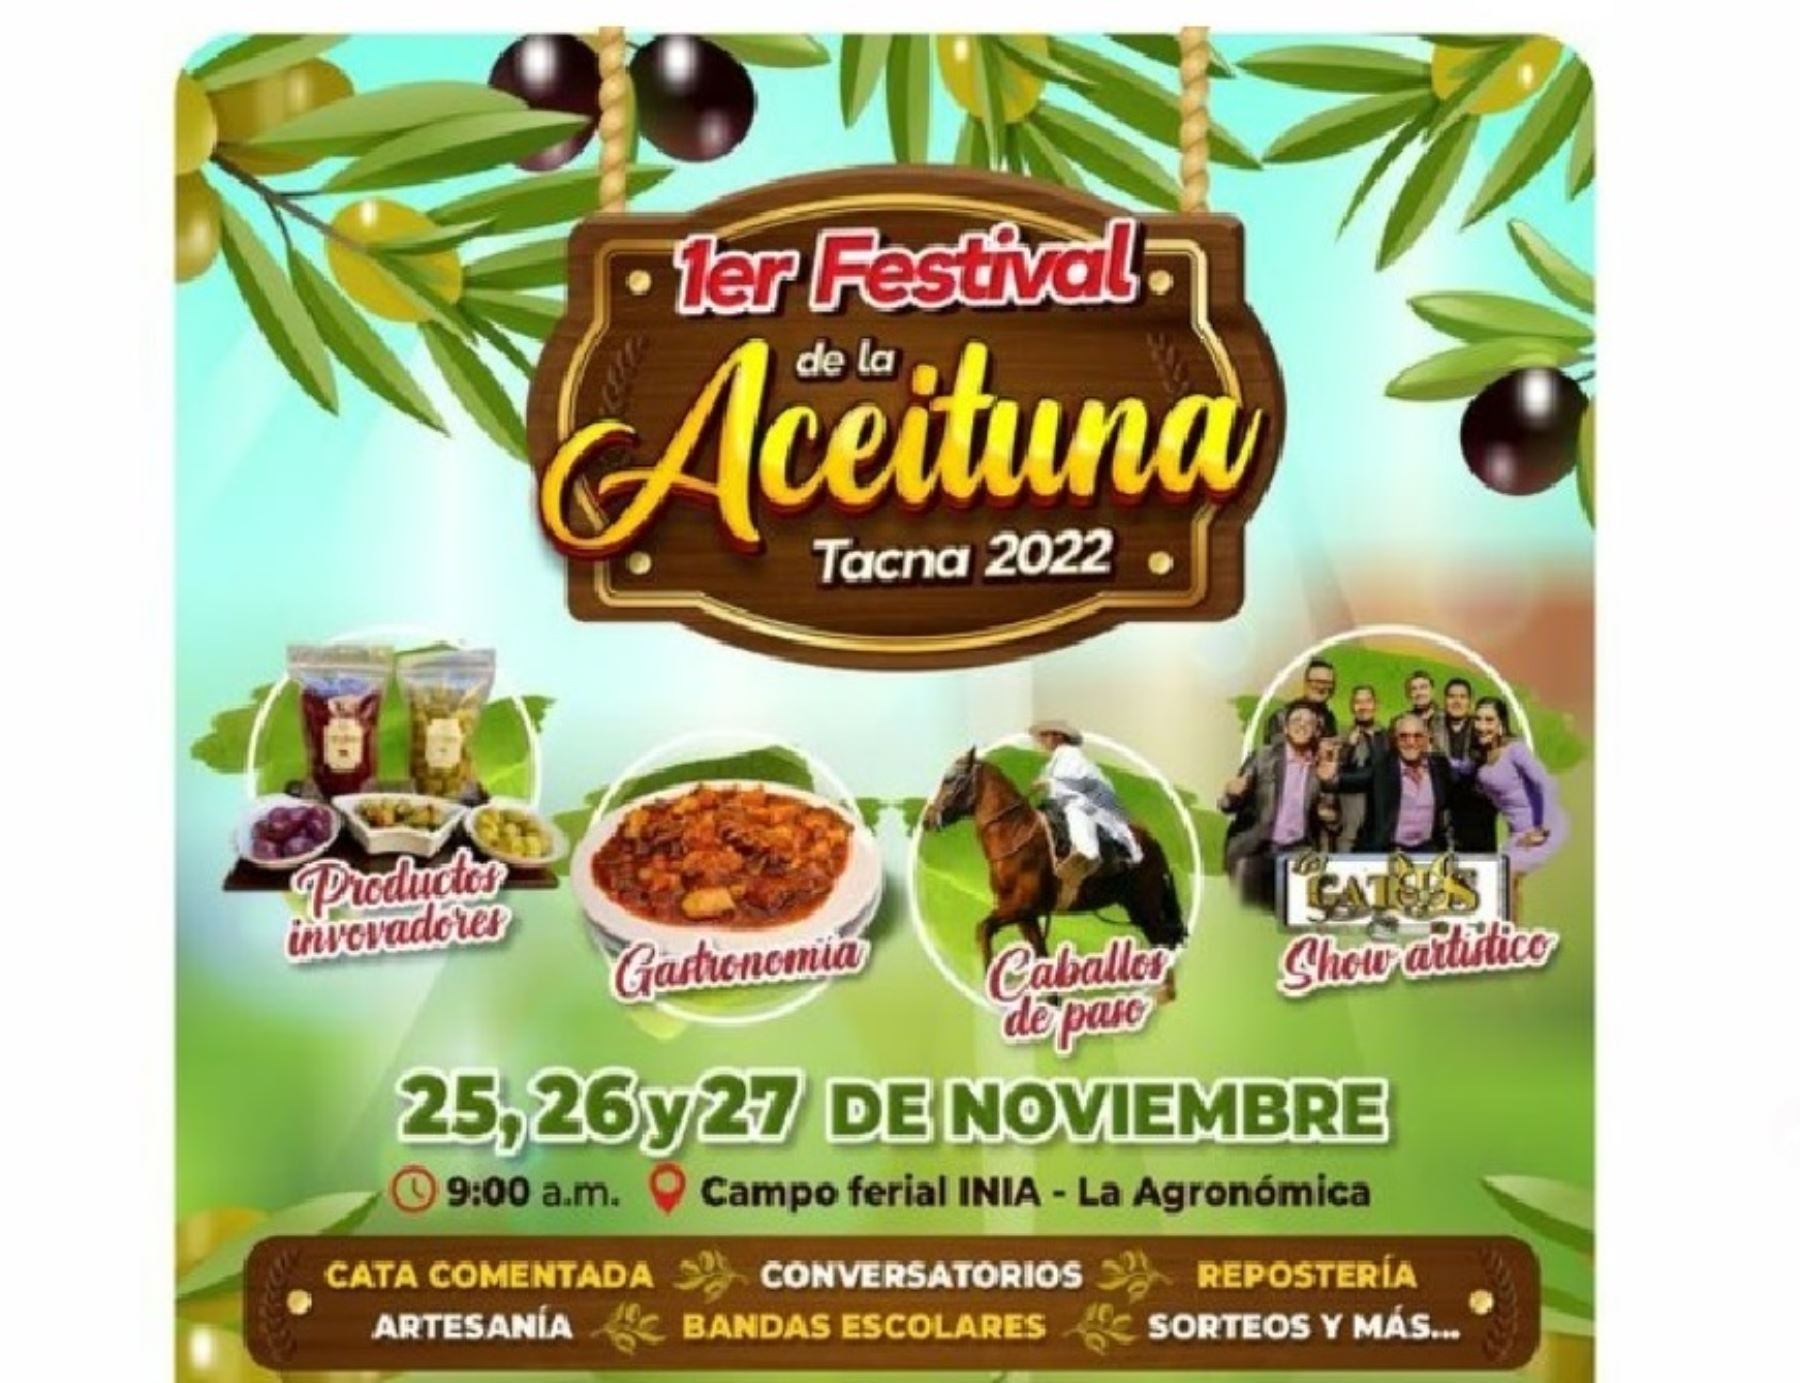 Tacna organiza este fin de semana el Festival de la Aceituna para promover consumo de su producto bandera. ANDINA/Difusión